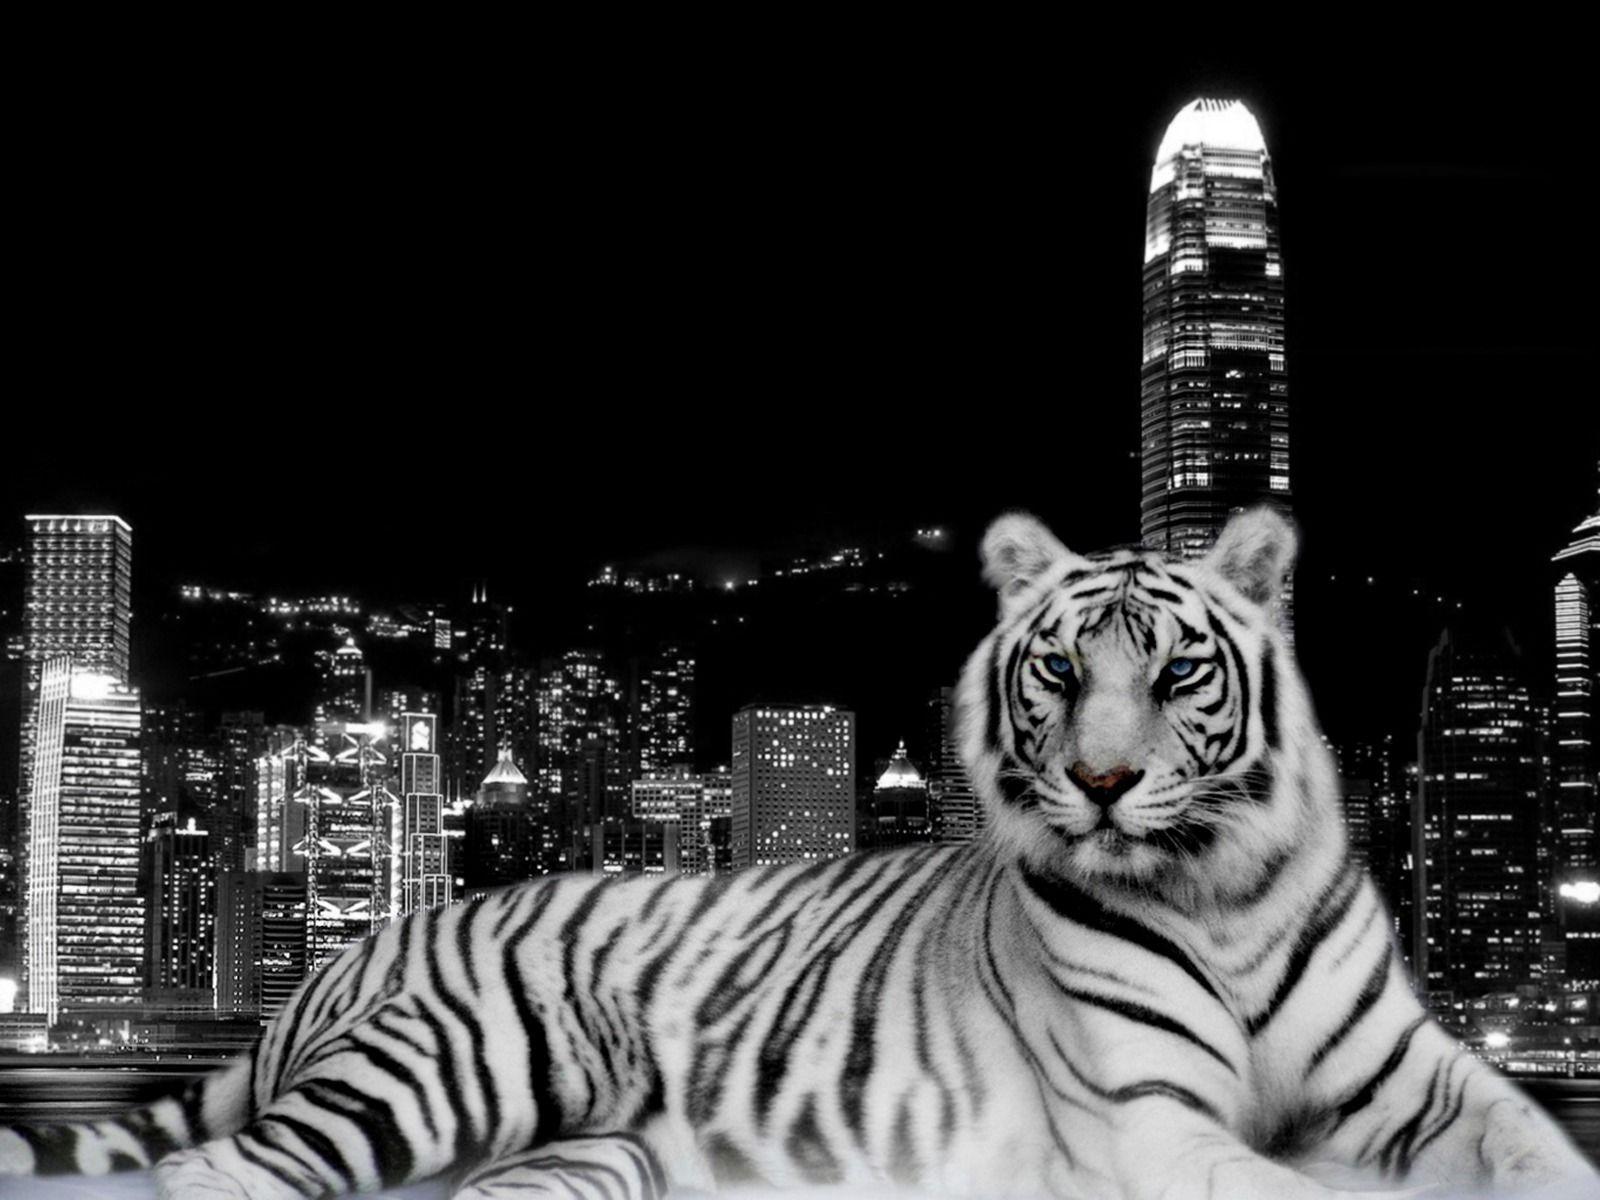 3D Tiger HD Wallpaper